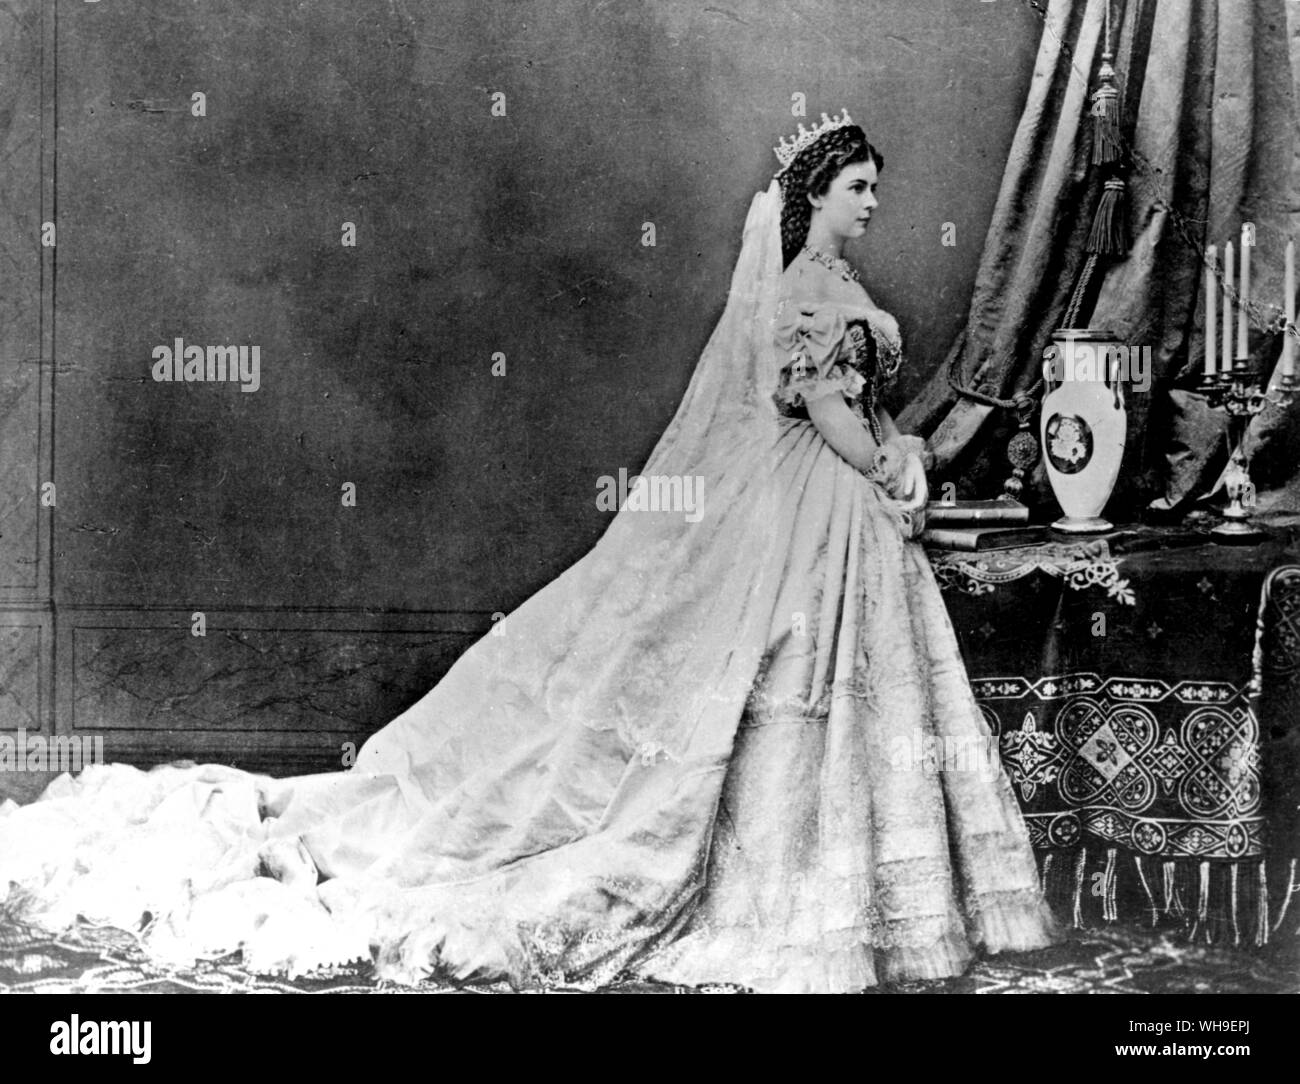 Elisabeth d'Autriche. Photographie prise au couronnement de la Reine de Hongrie, à l'âge de 29 ans. Fin du xixe siècle. Banque D'Images